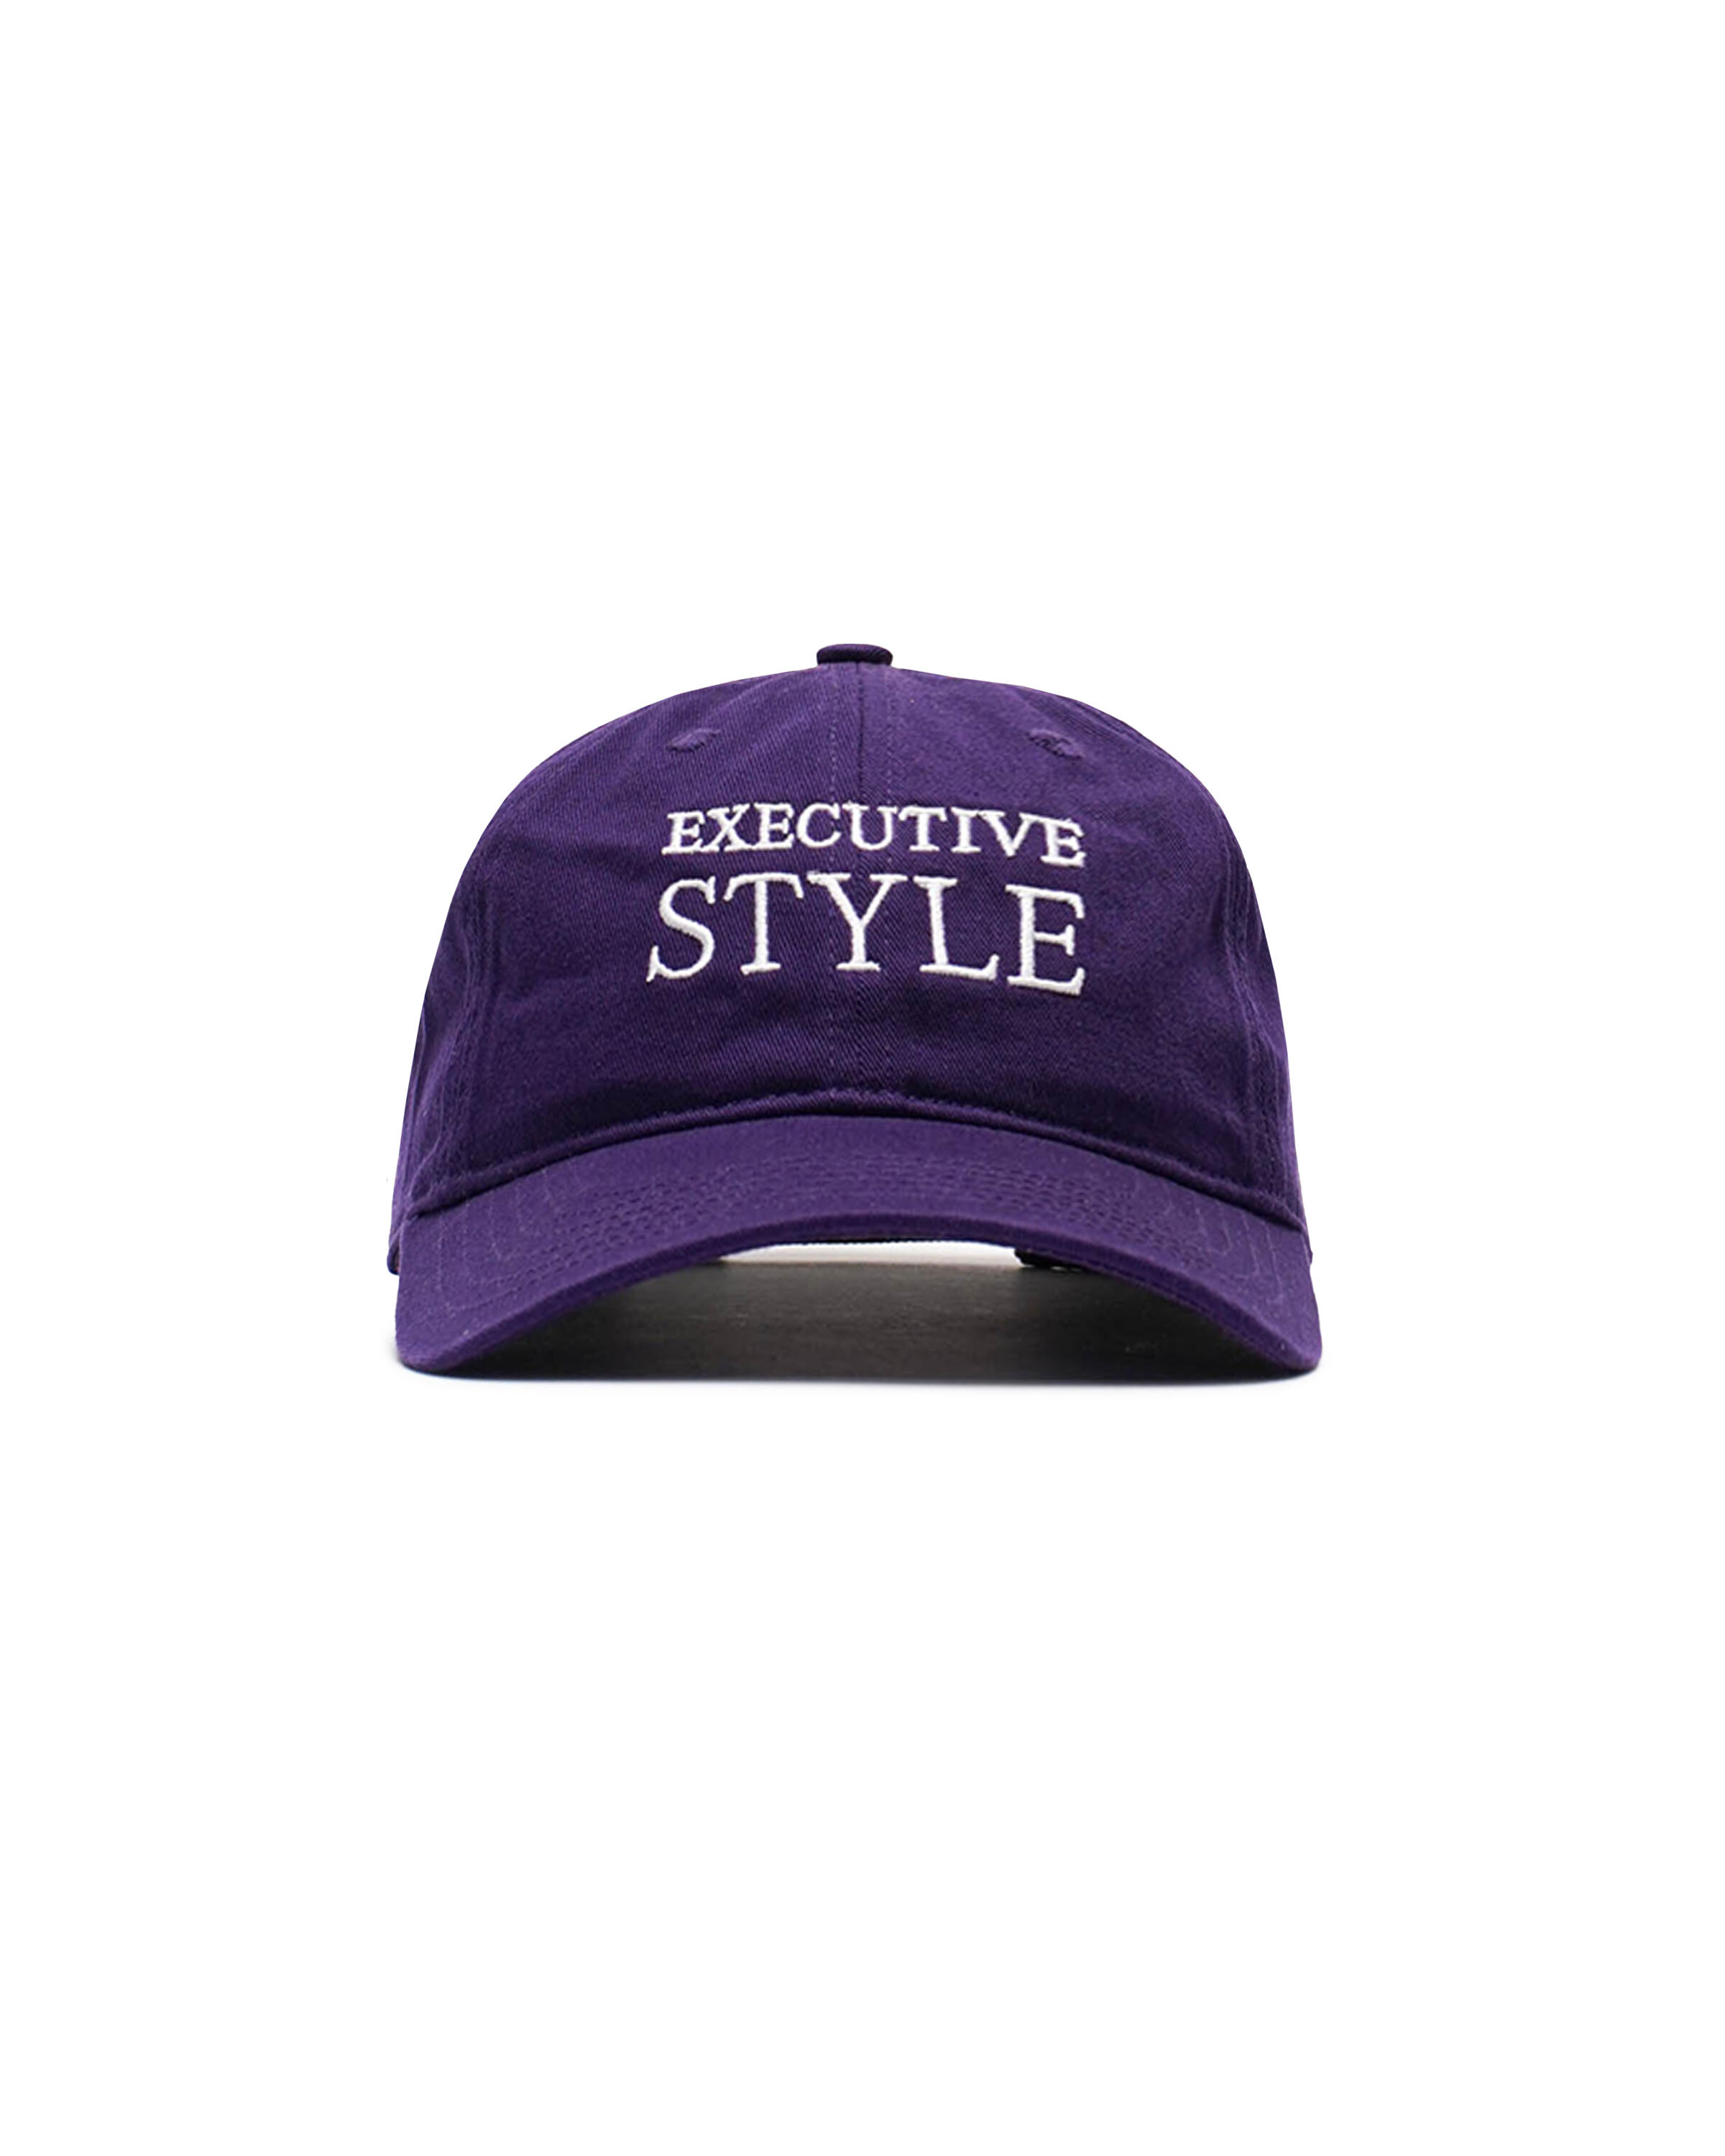 IDEA EXECUTIVE STYLE HAT